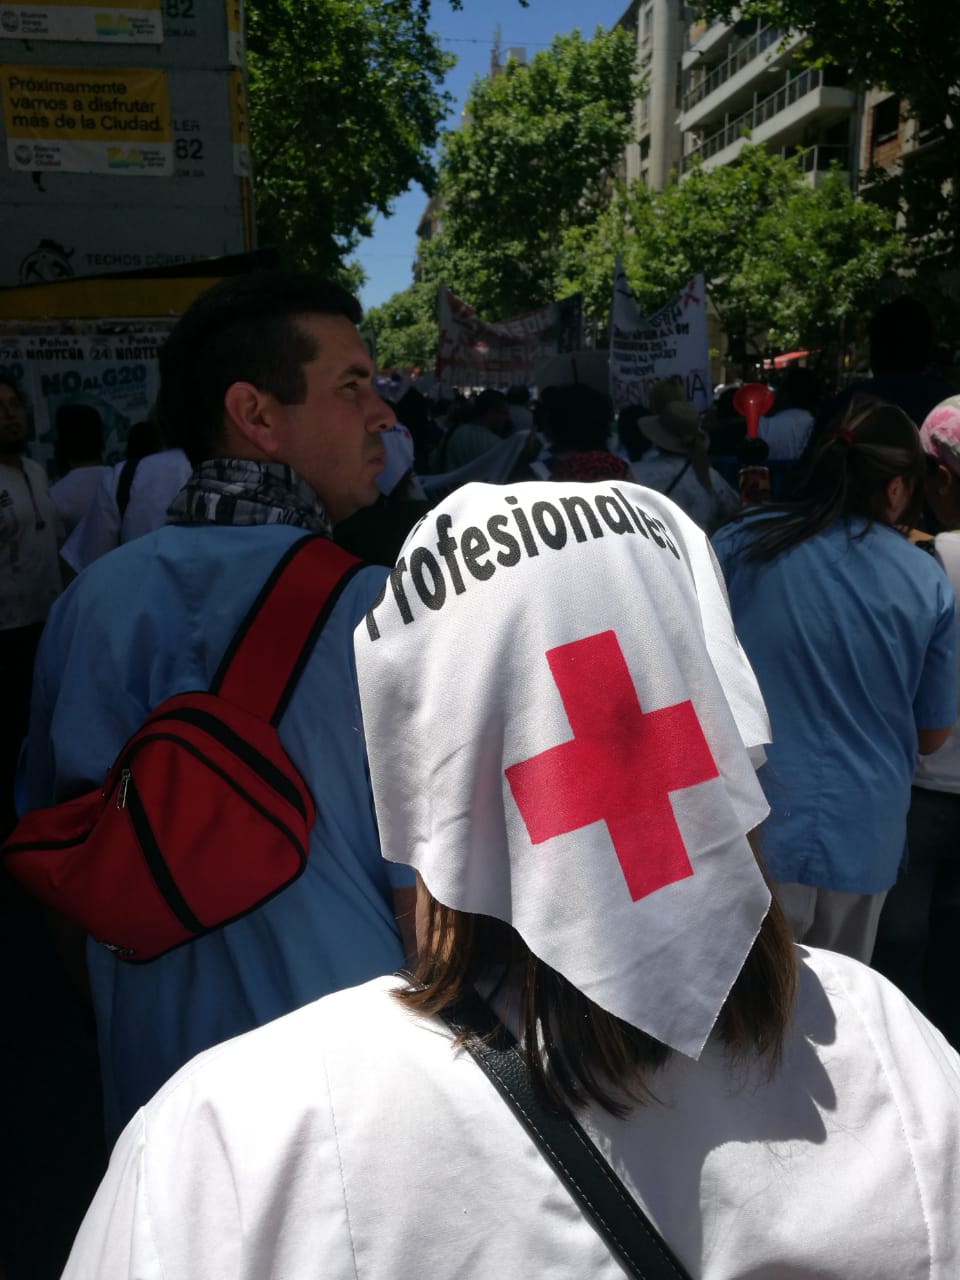 Masiva marcha de enfermeras e instrumentadoras: “Somos profesionales”